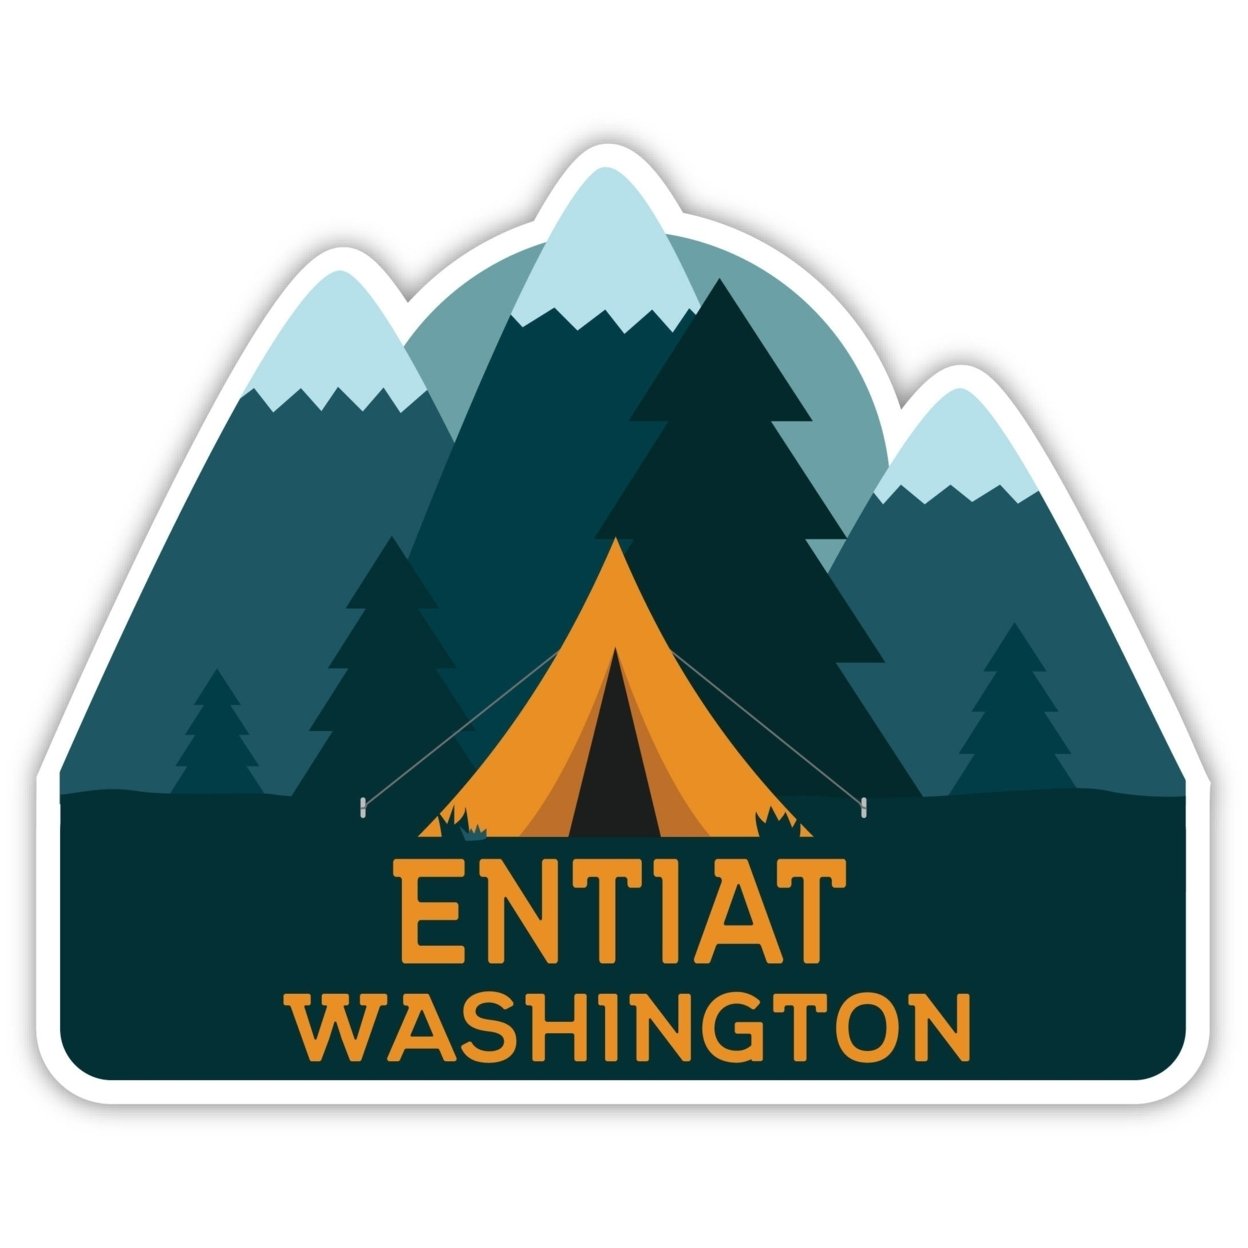 Entiat Washington Souvenir Decorative Stickers (Choose Theme And Size) - Single Unit, 12-Inch, Tent